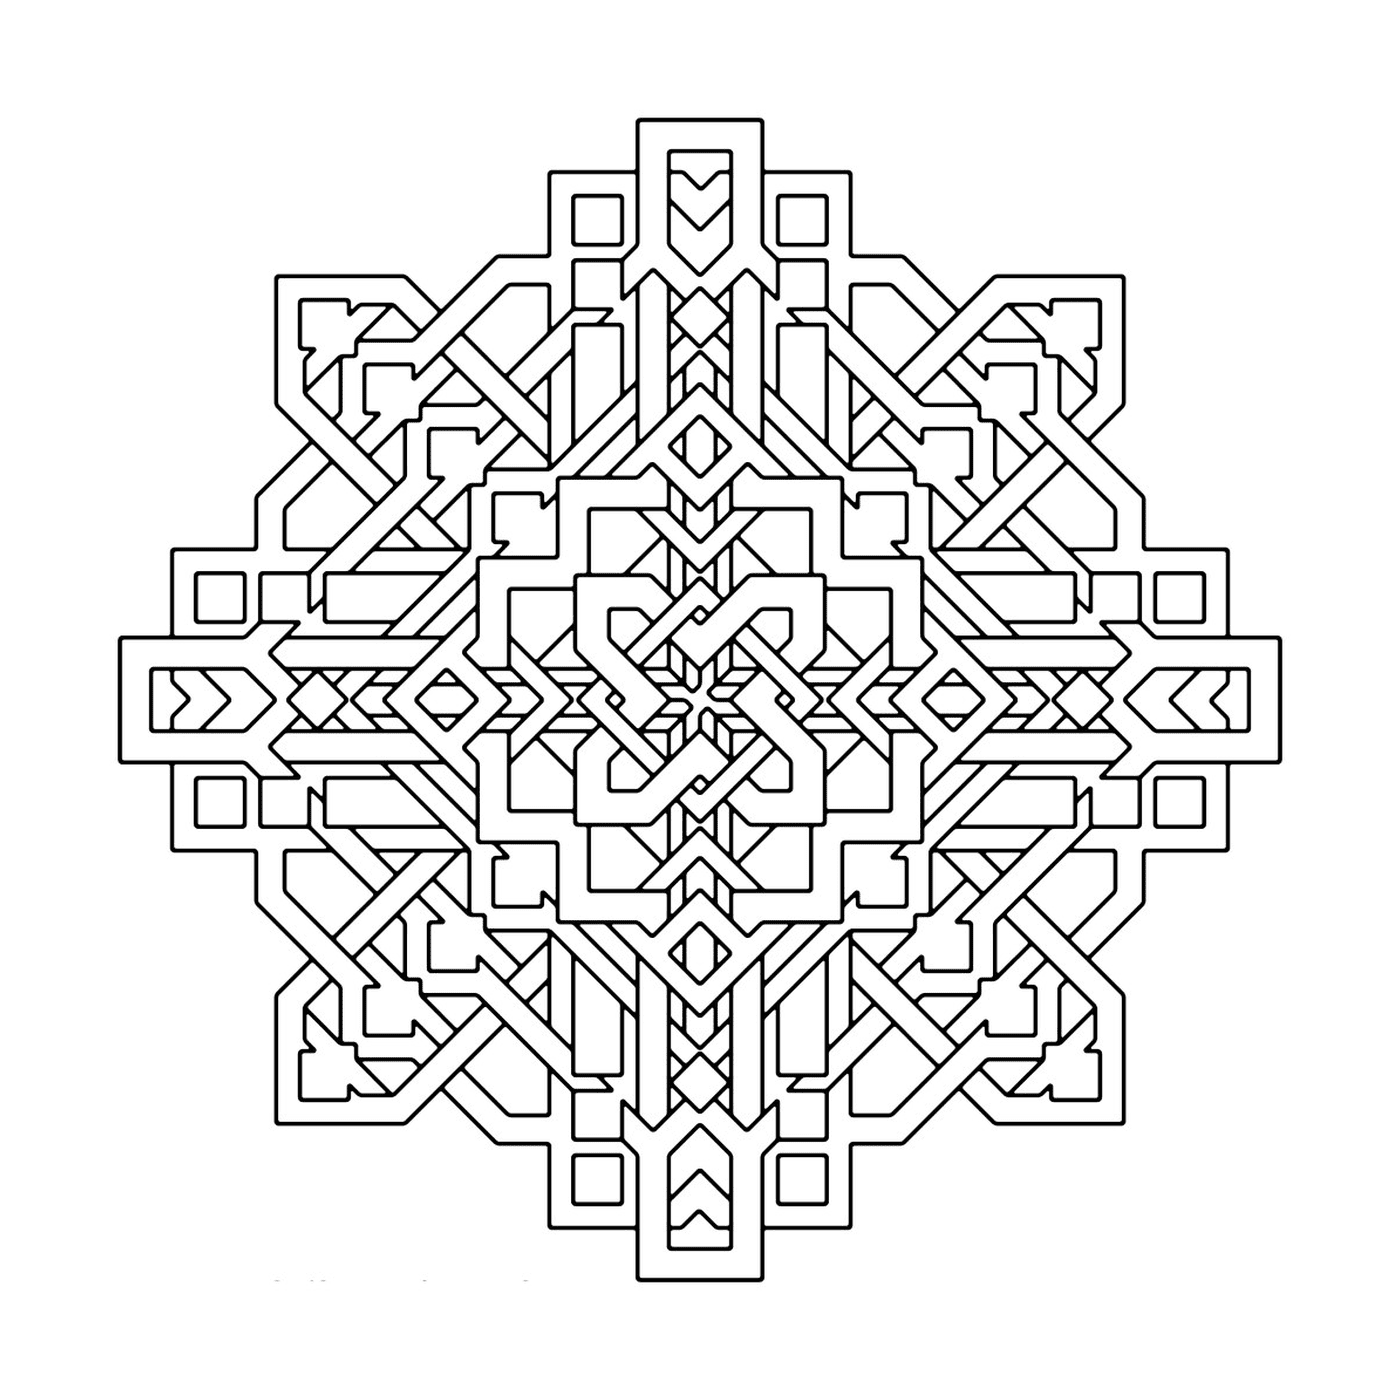  Um padrão geométrico complexo e detalhado 